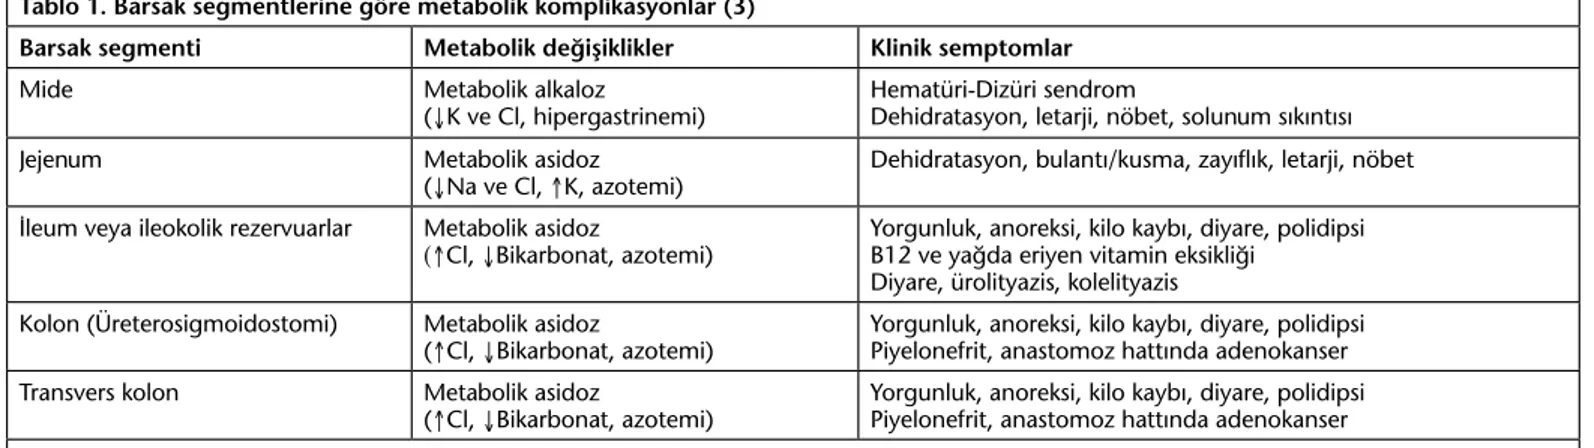 Tablo 1. Barsak segmentlerine göre metabolik komplikasyonlar (3)